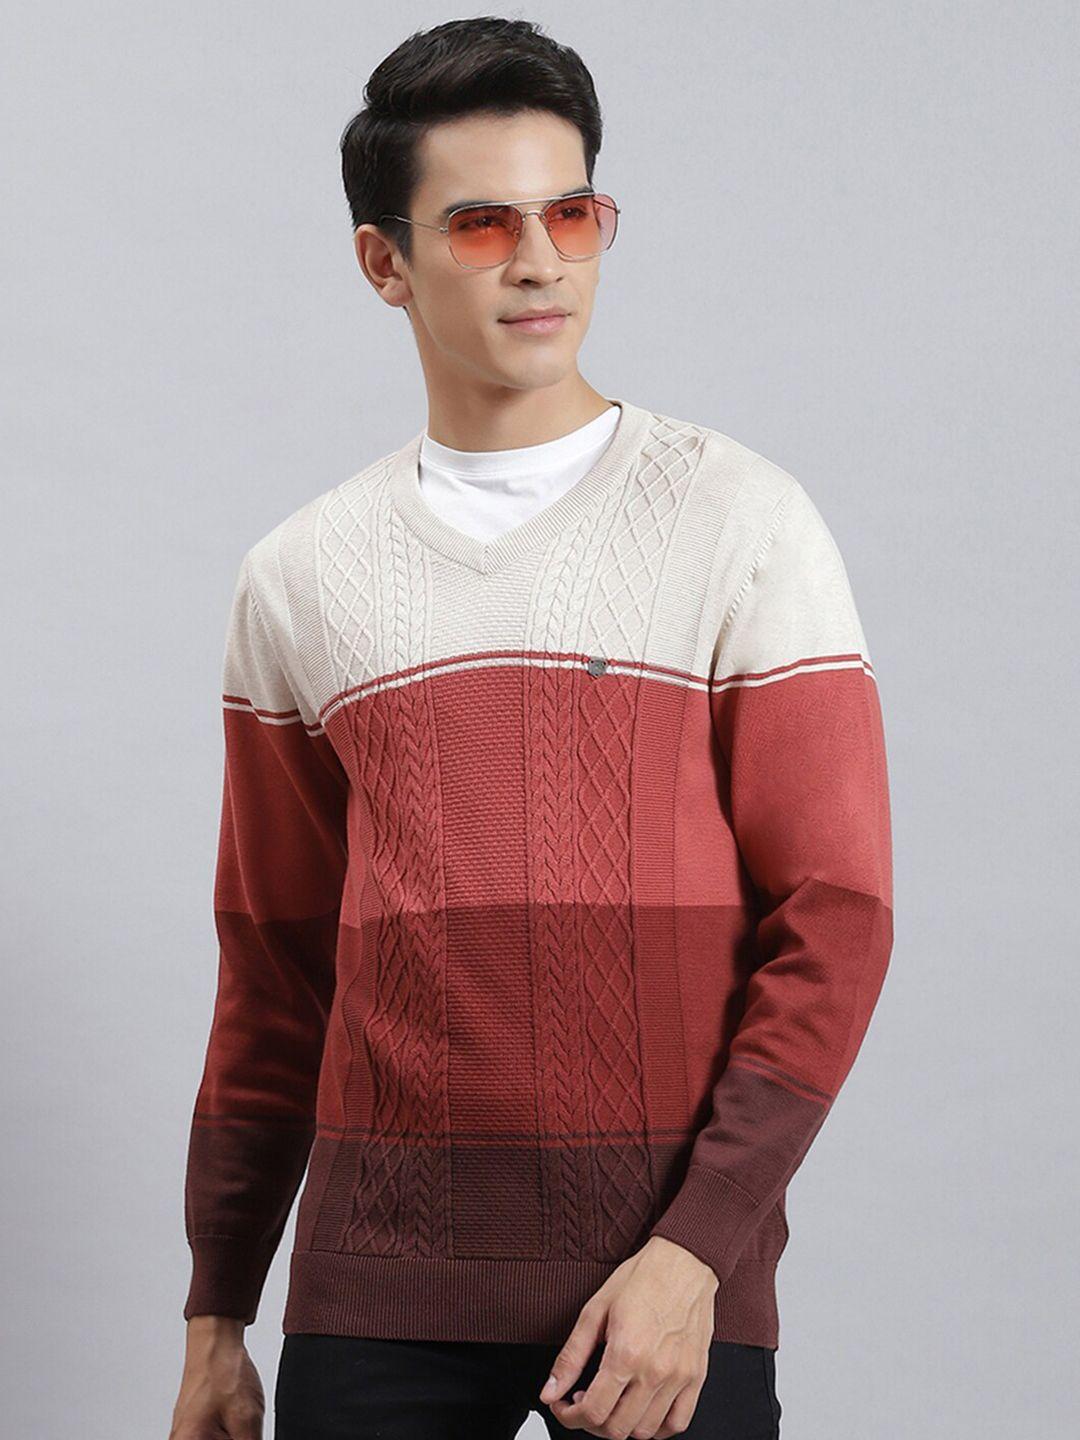 monte carlo colourblocked v-neck pullover